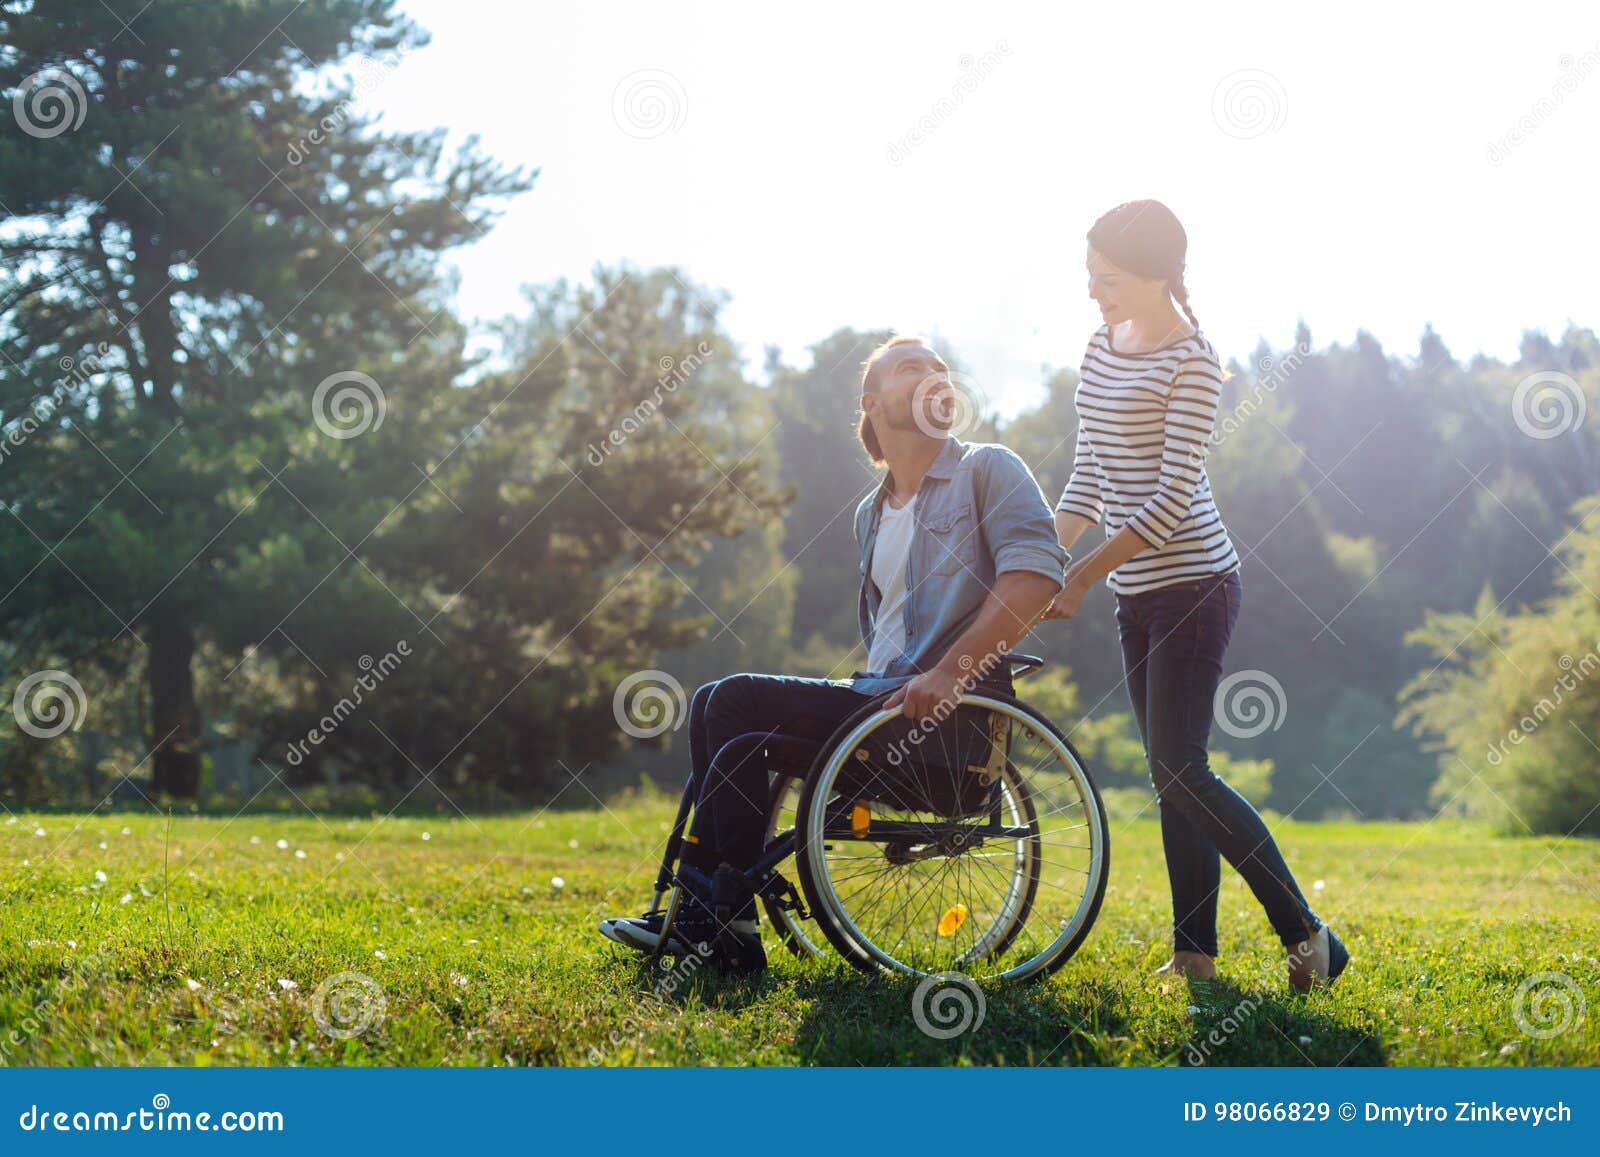 Жены мужей инвалидов 1 группы. Прогулка на инвалидной коляске со спины. Семья с детьми инвалидами со спины. Семейные пары с инвалидностью. Муж на инвалидной коляске с женой.